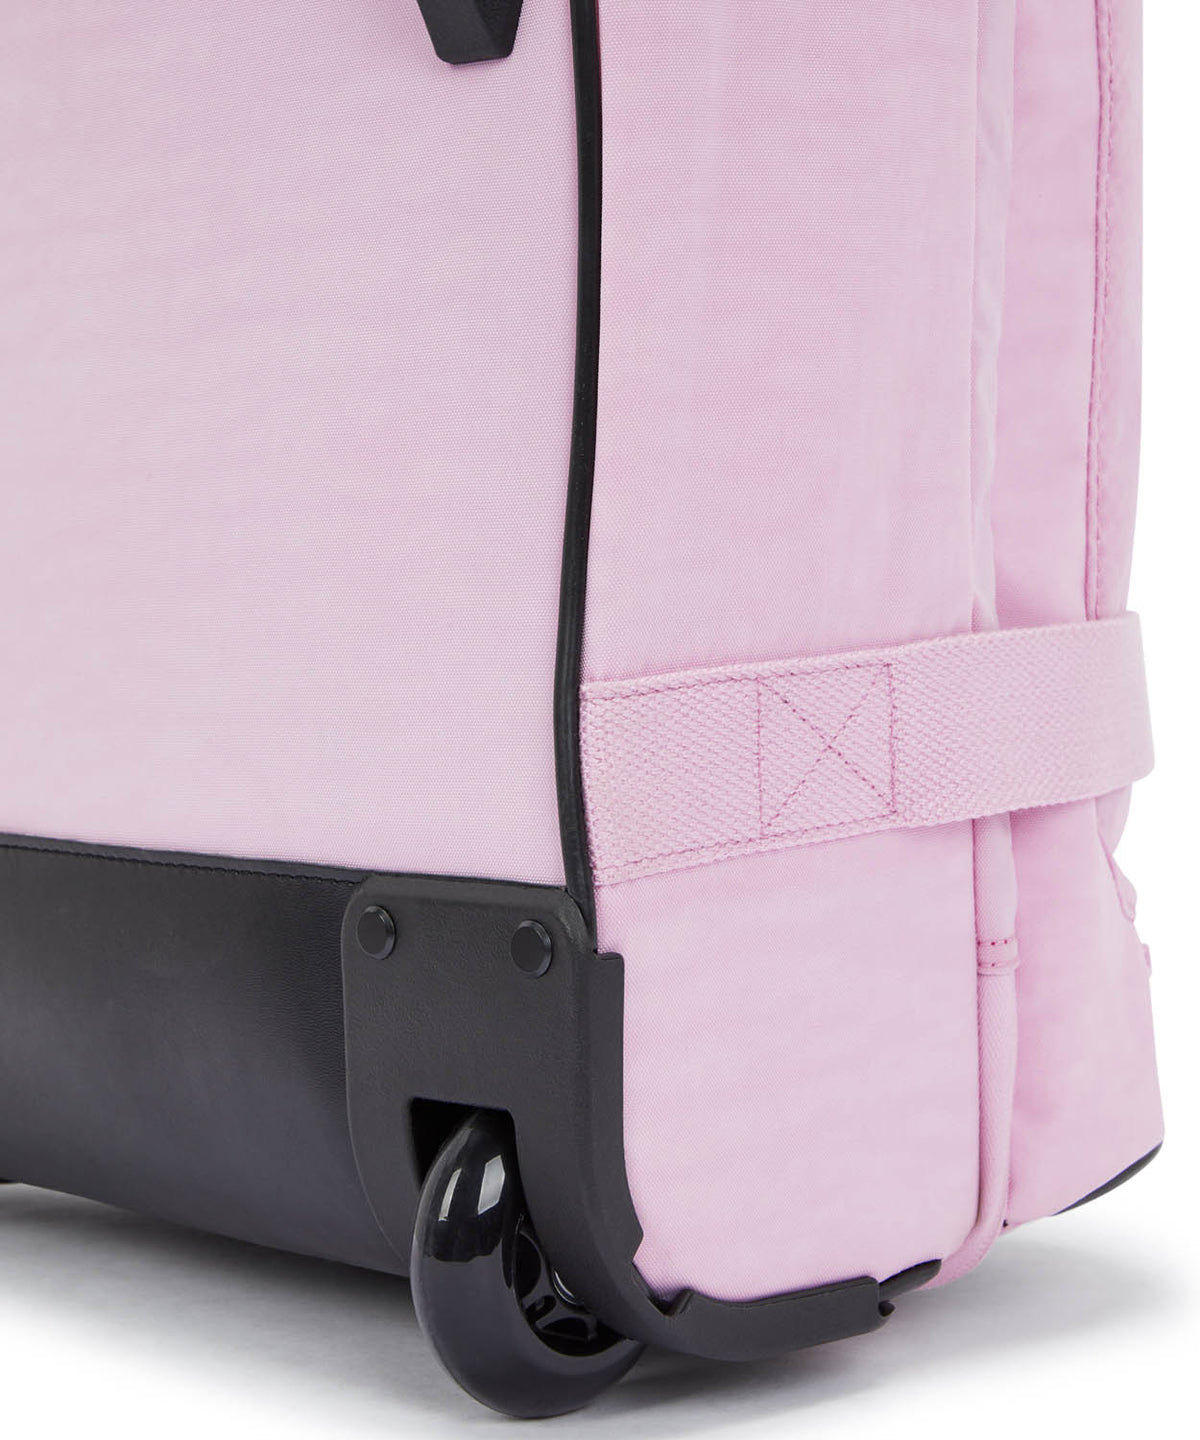 Kipling Aviana M Suitcase - Blooming Pink